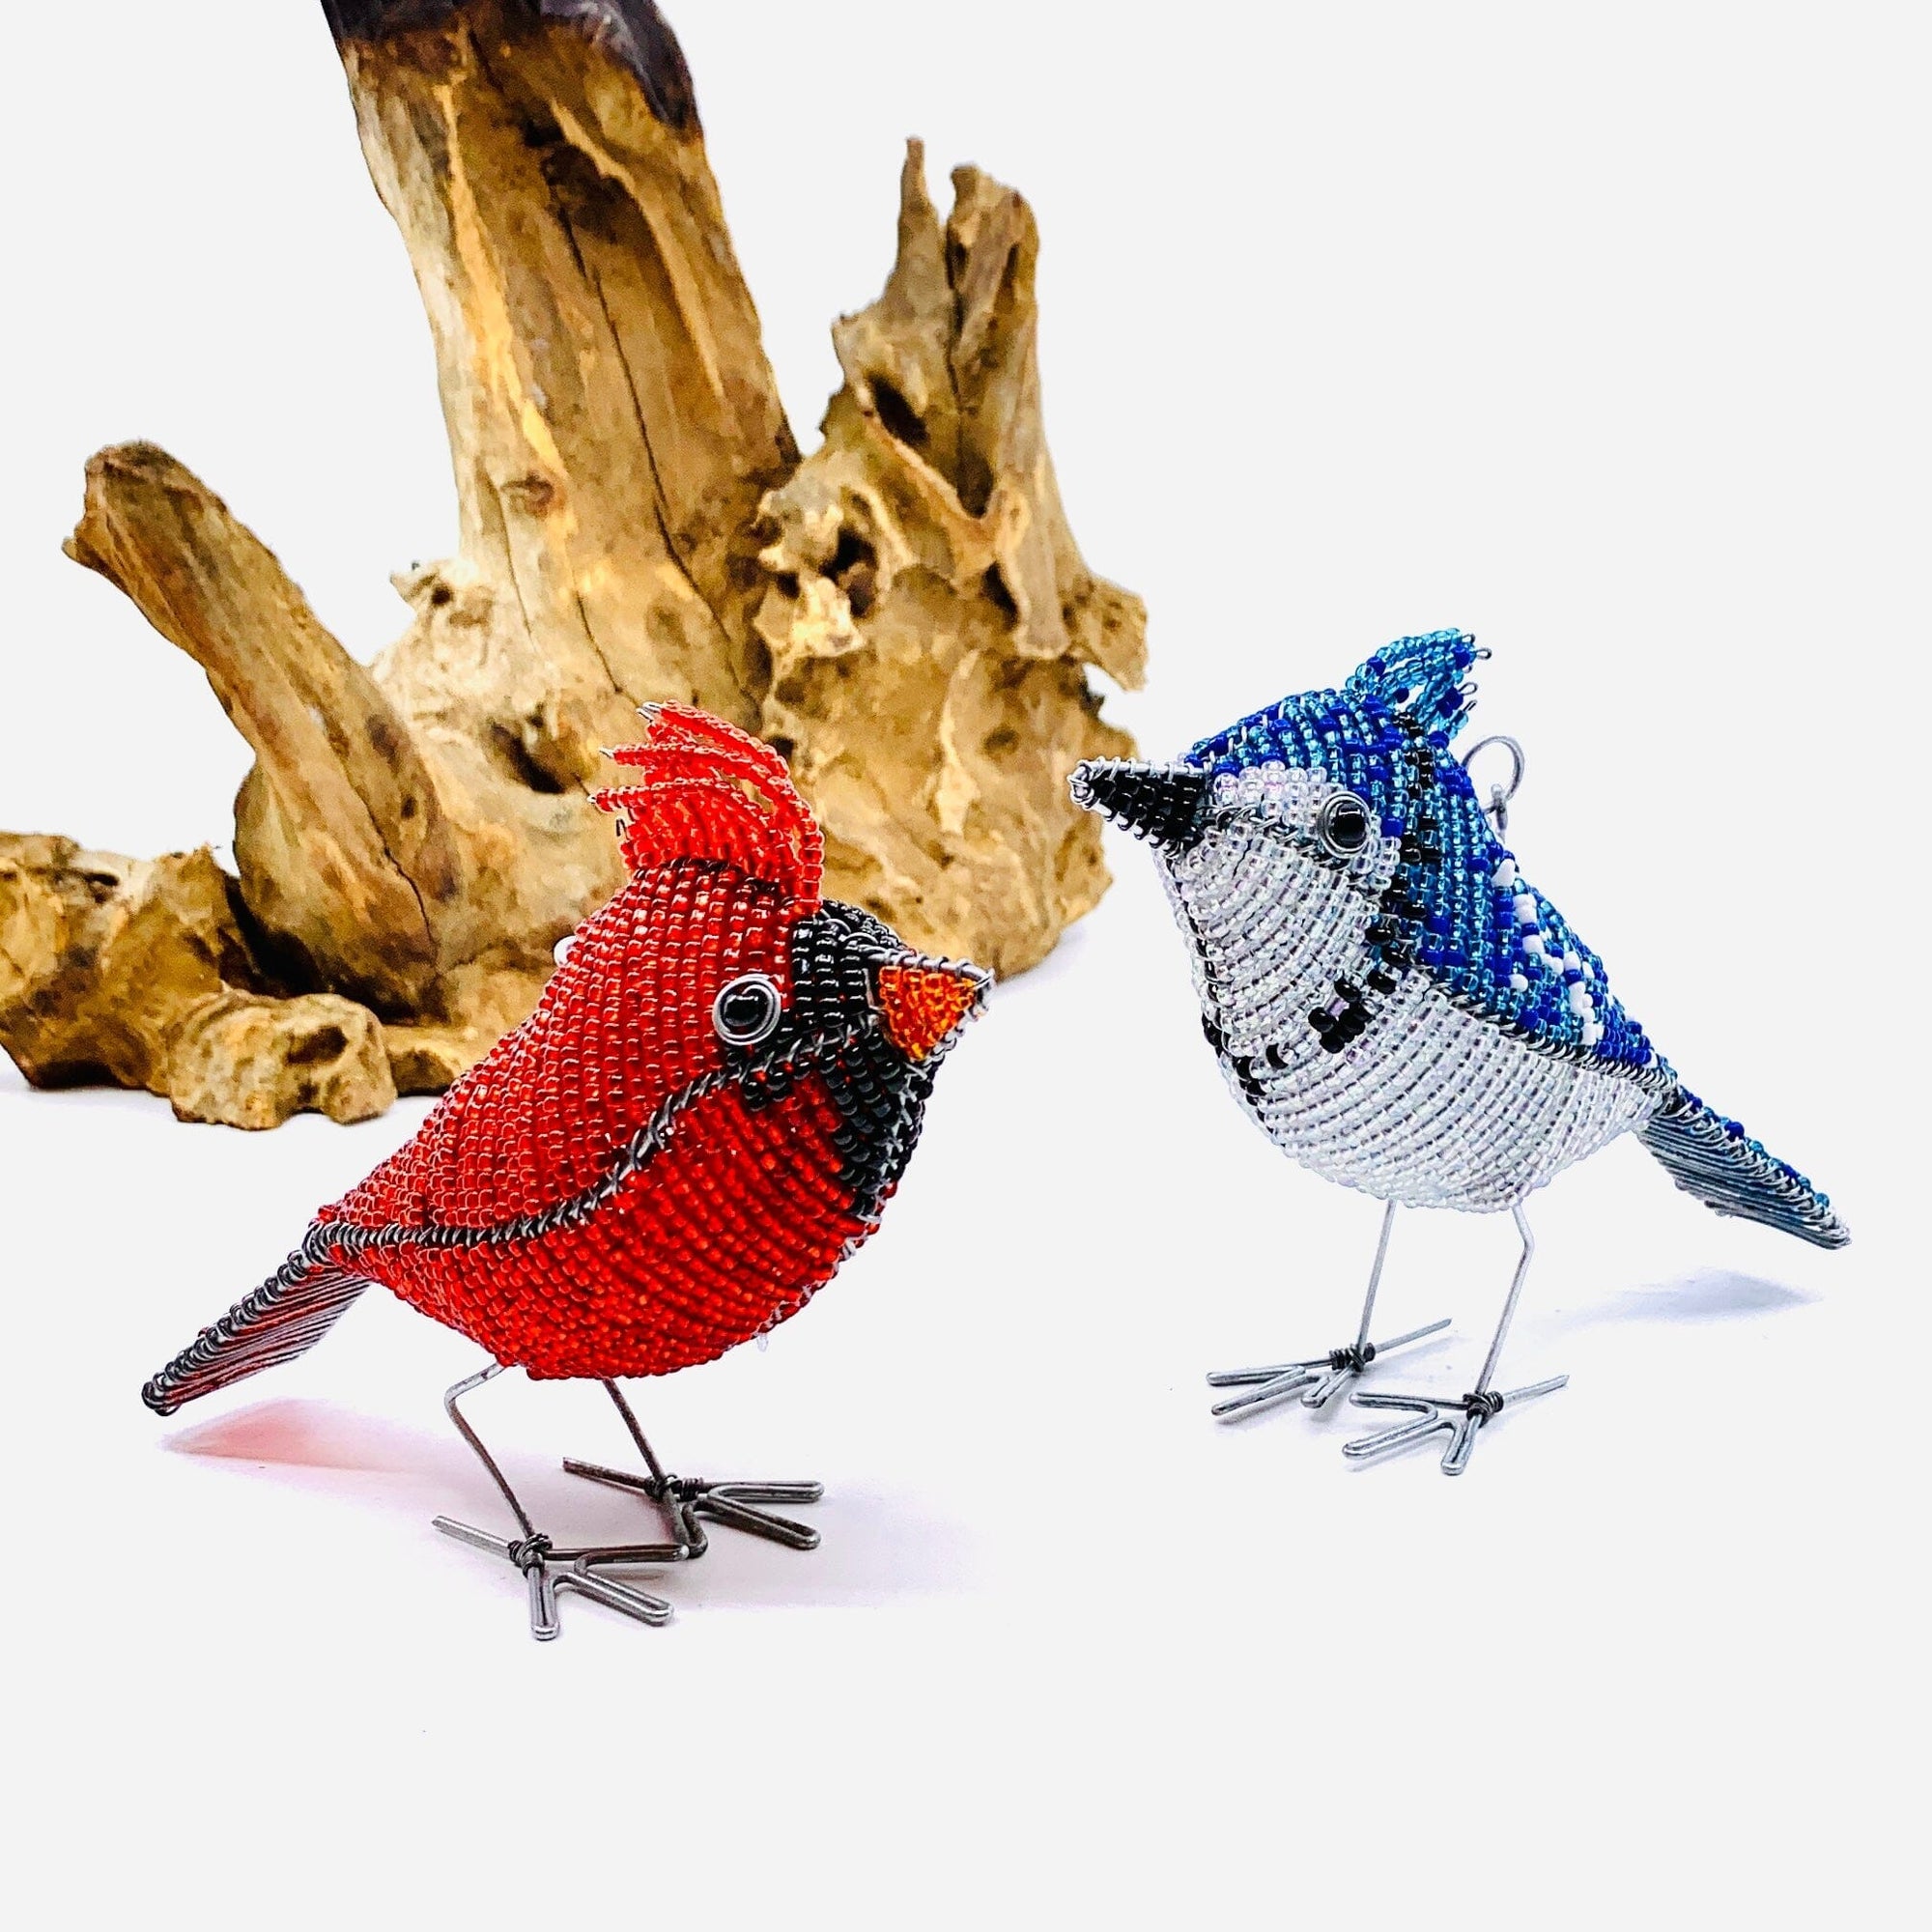 Beaded Bird Ornament, Blue Jay Ornament East Africa Co. 